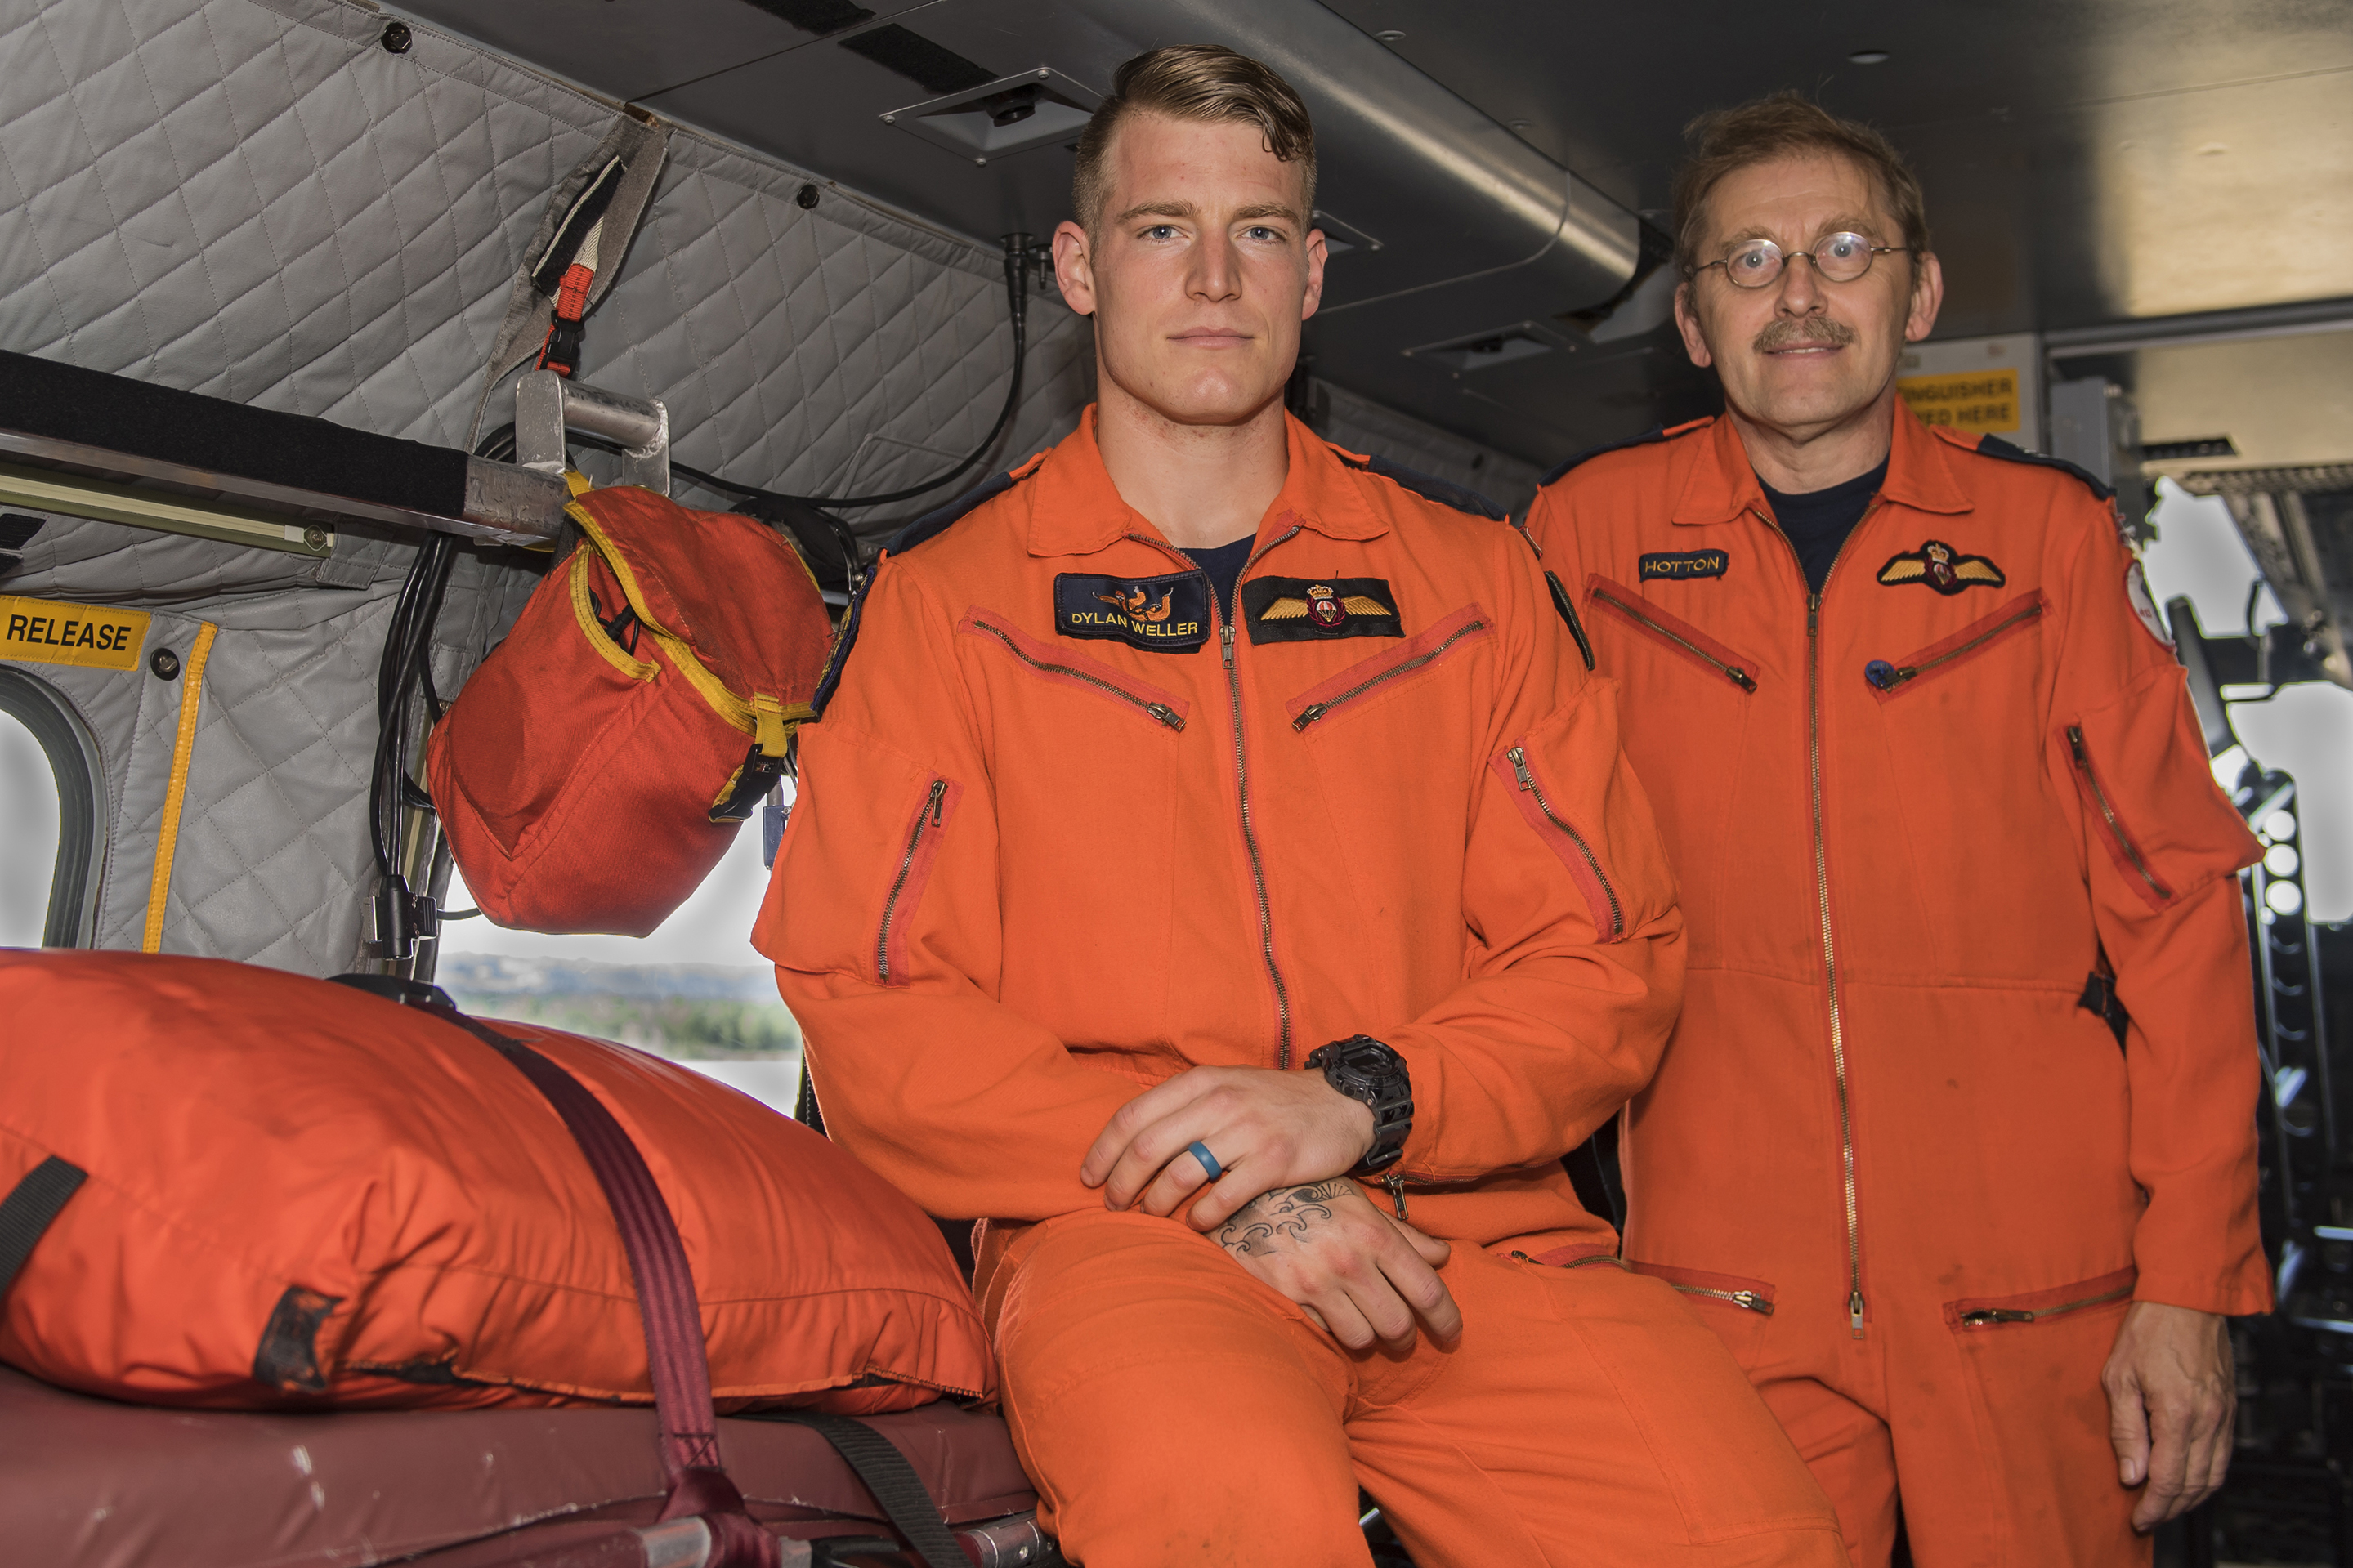 Deux hommes en combinaison orange s’appuient sur une couchette à bord d’un aéronef.